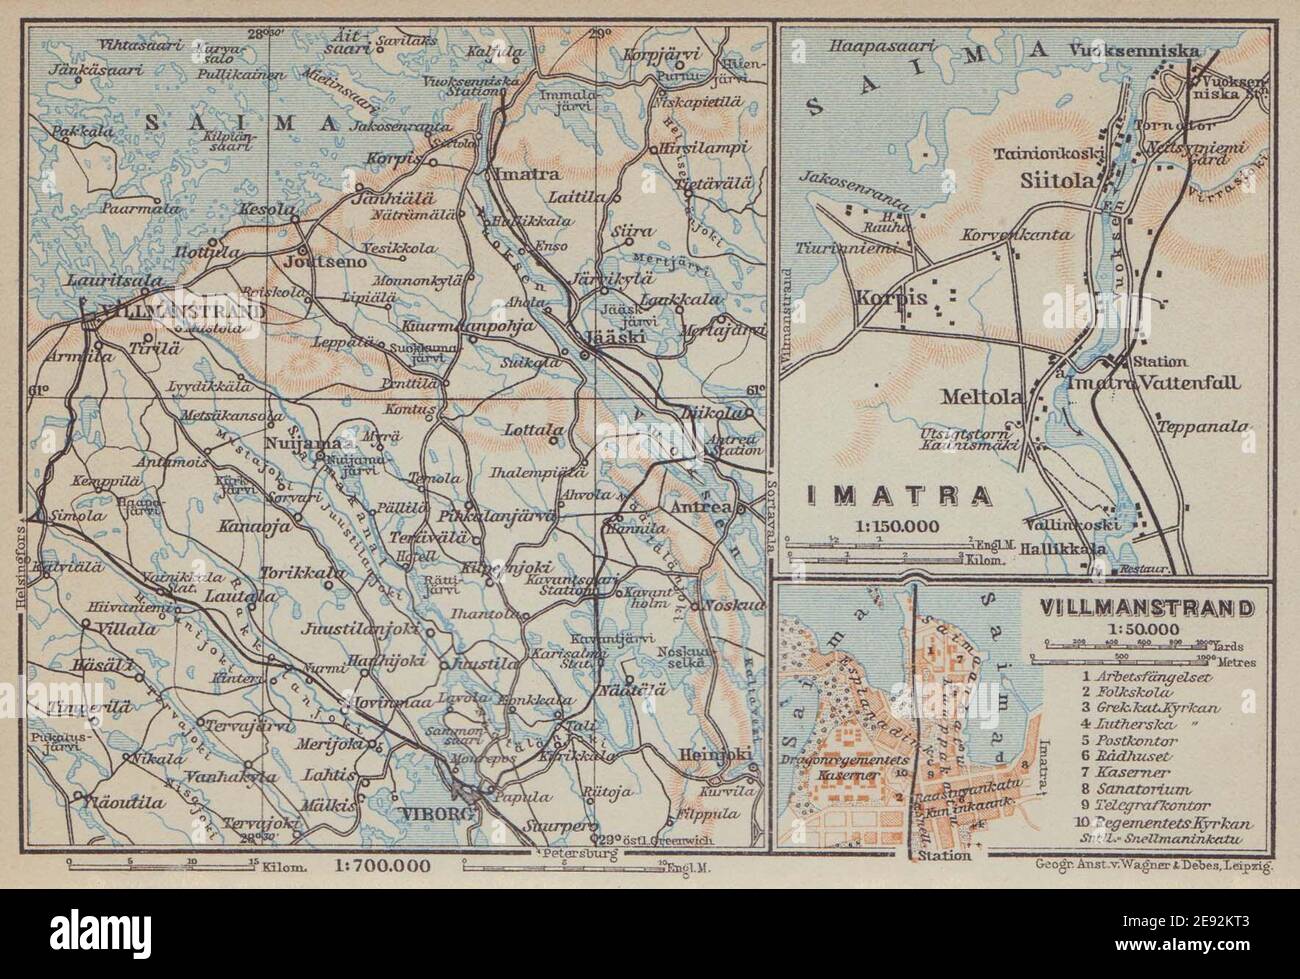 Imatra/Lappeenranta (Villmanstrand). Finlandia/Russia. BAEDEKER 1914 vecchia mappa Foto Stock